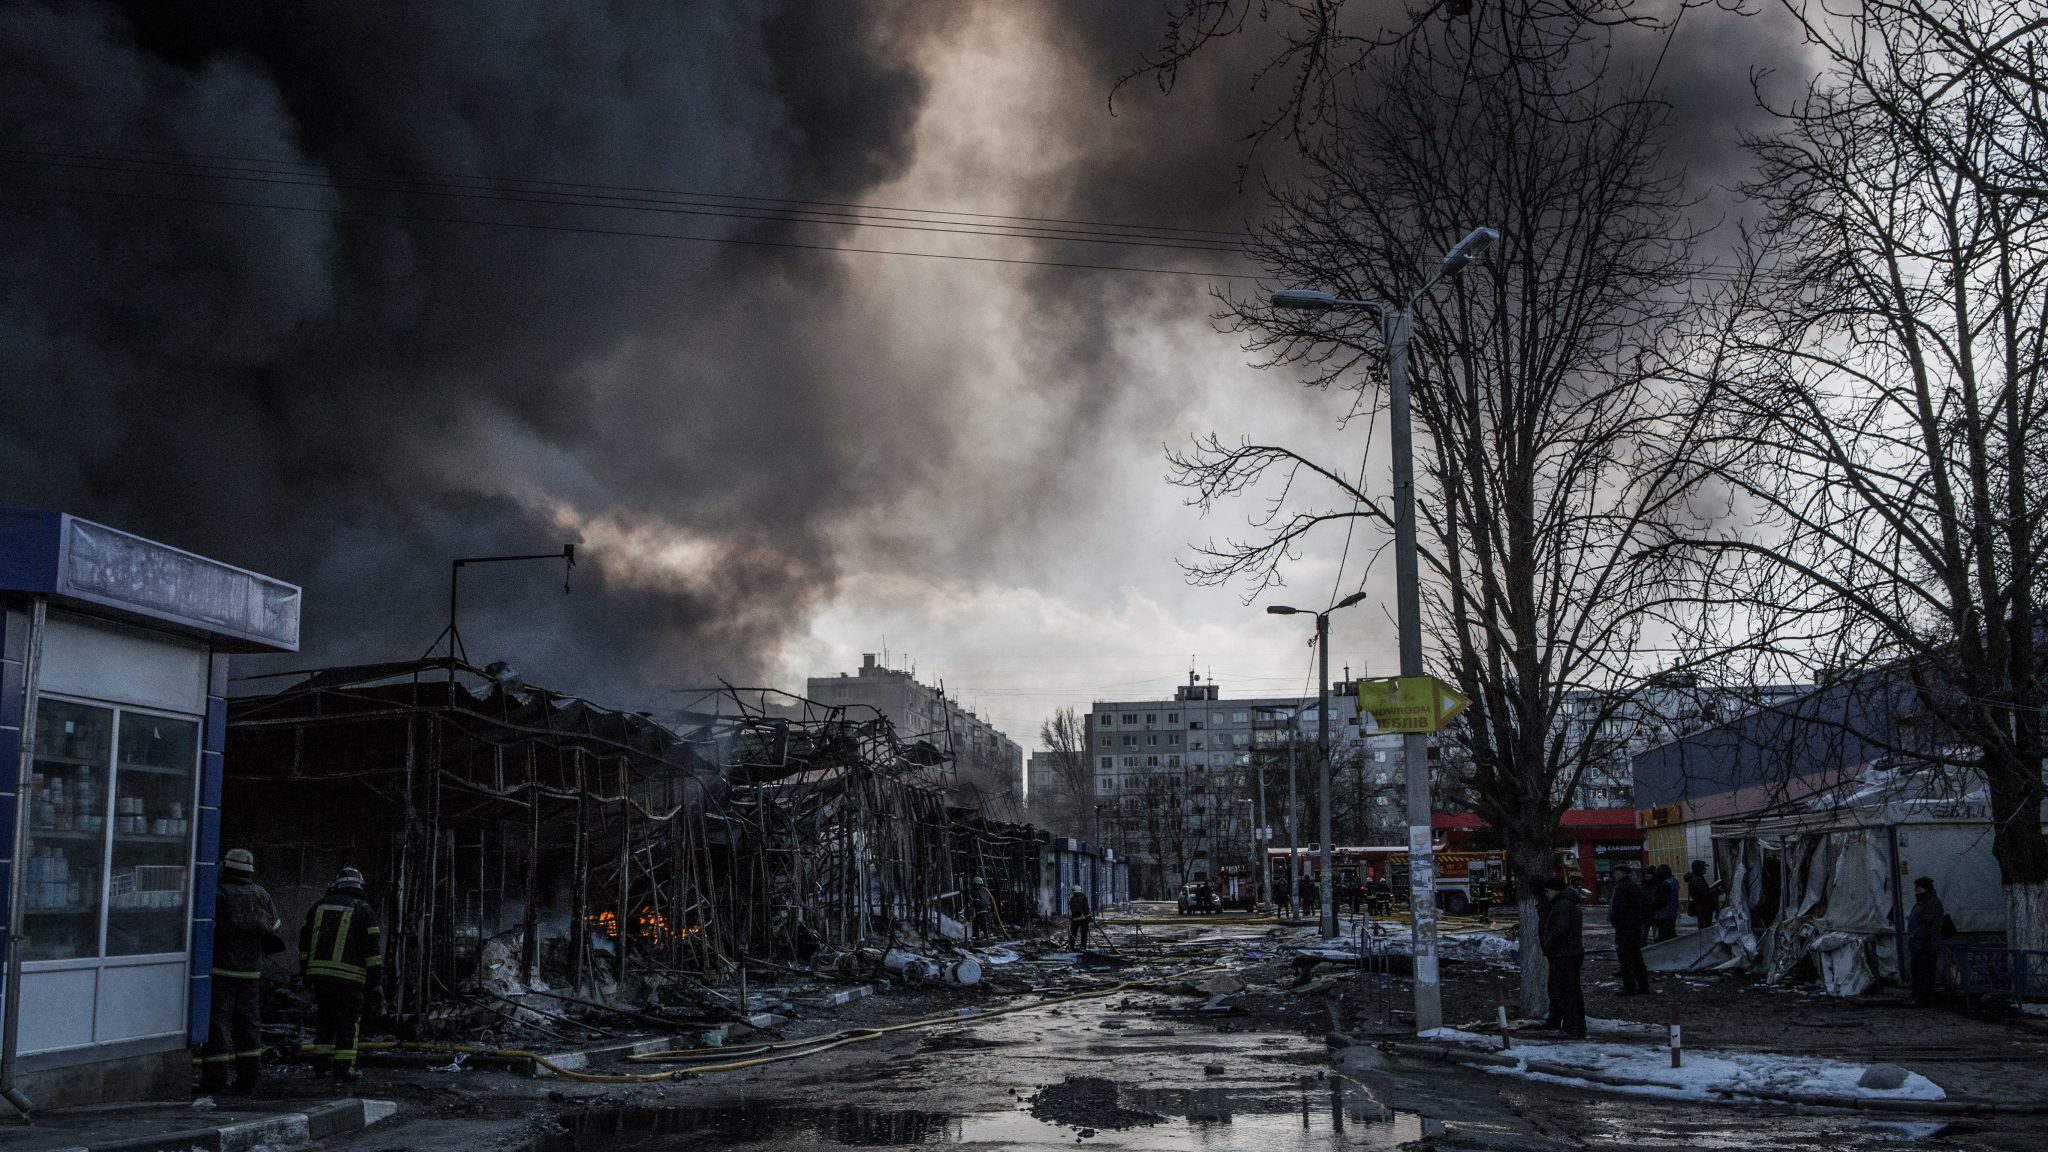 Видео уничтожений на украине. Украина в руинах. Донбасс в огне. Обстрелы Мариуполя 24 января 2014.